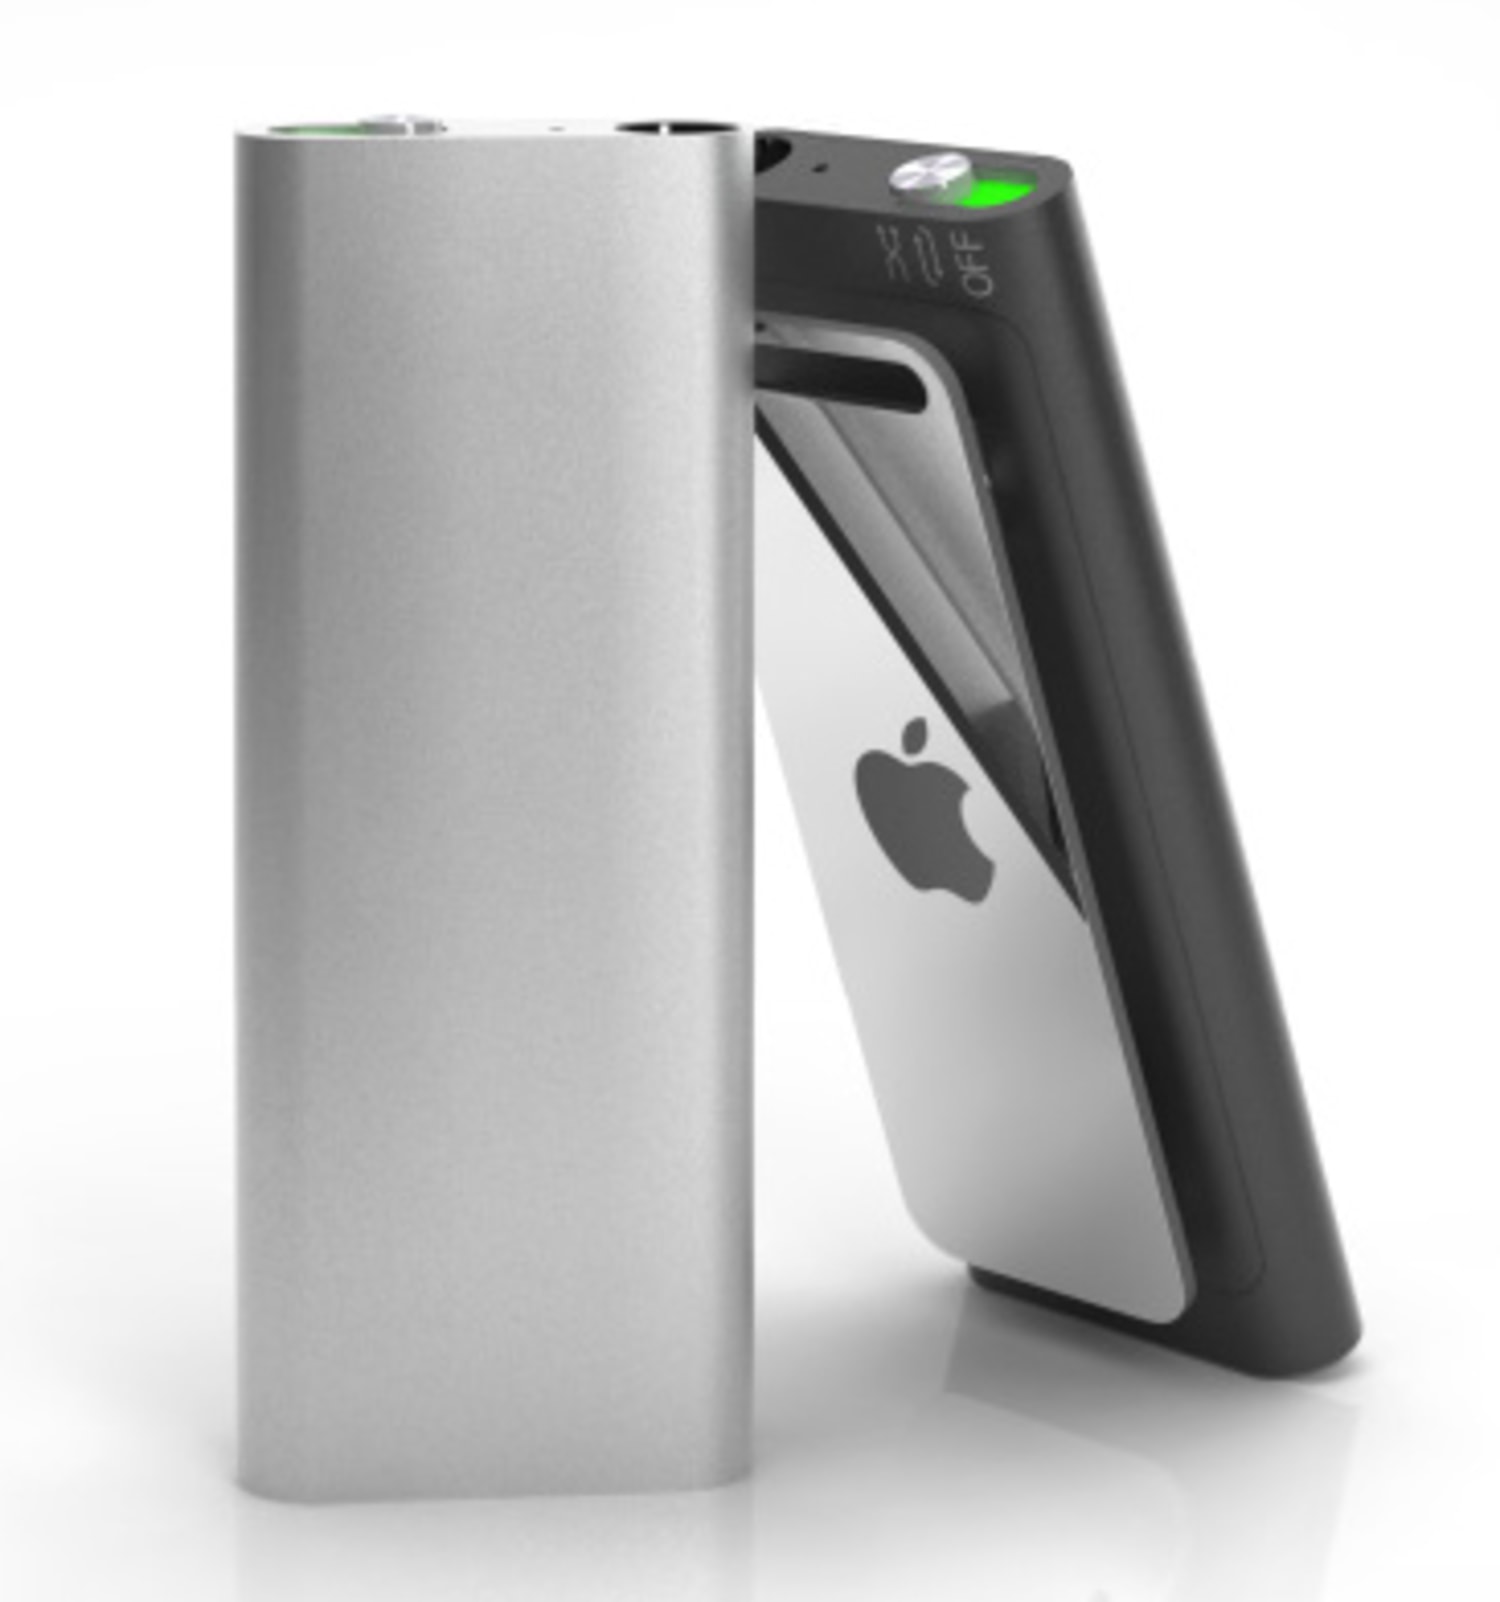 Apple launches smaller, 4-gigabyte Shuffle